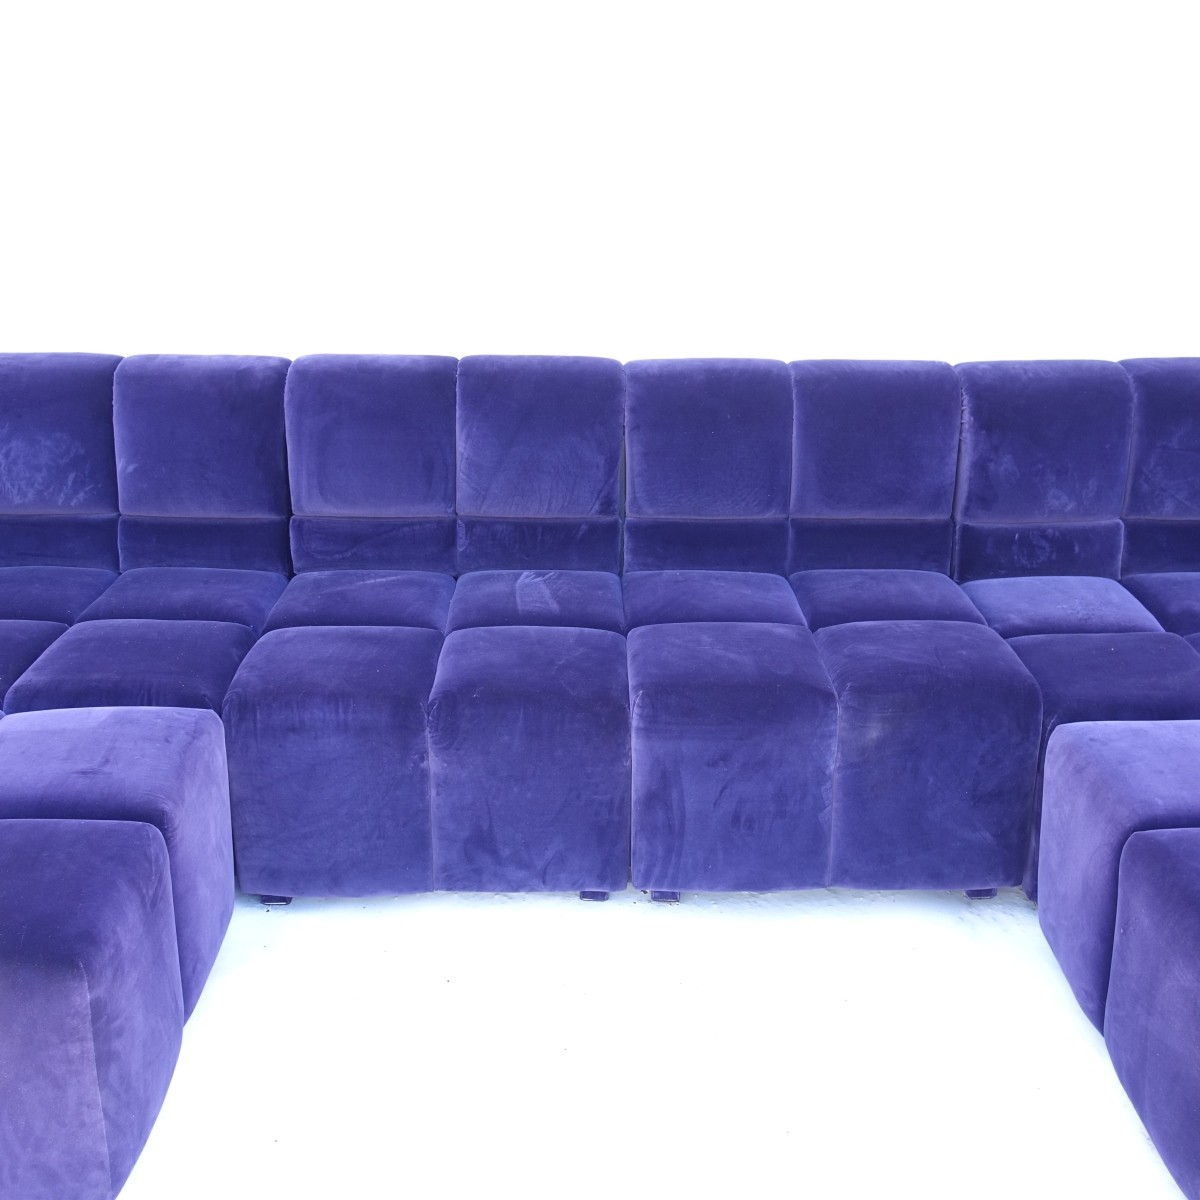 6 pc Modern Velvet Sectional Sofa - Image 4 of 7